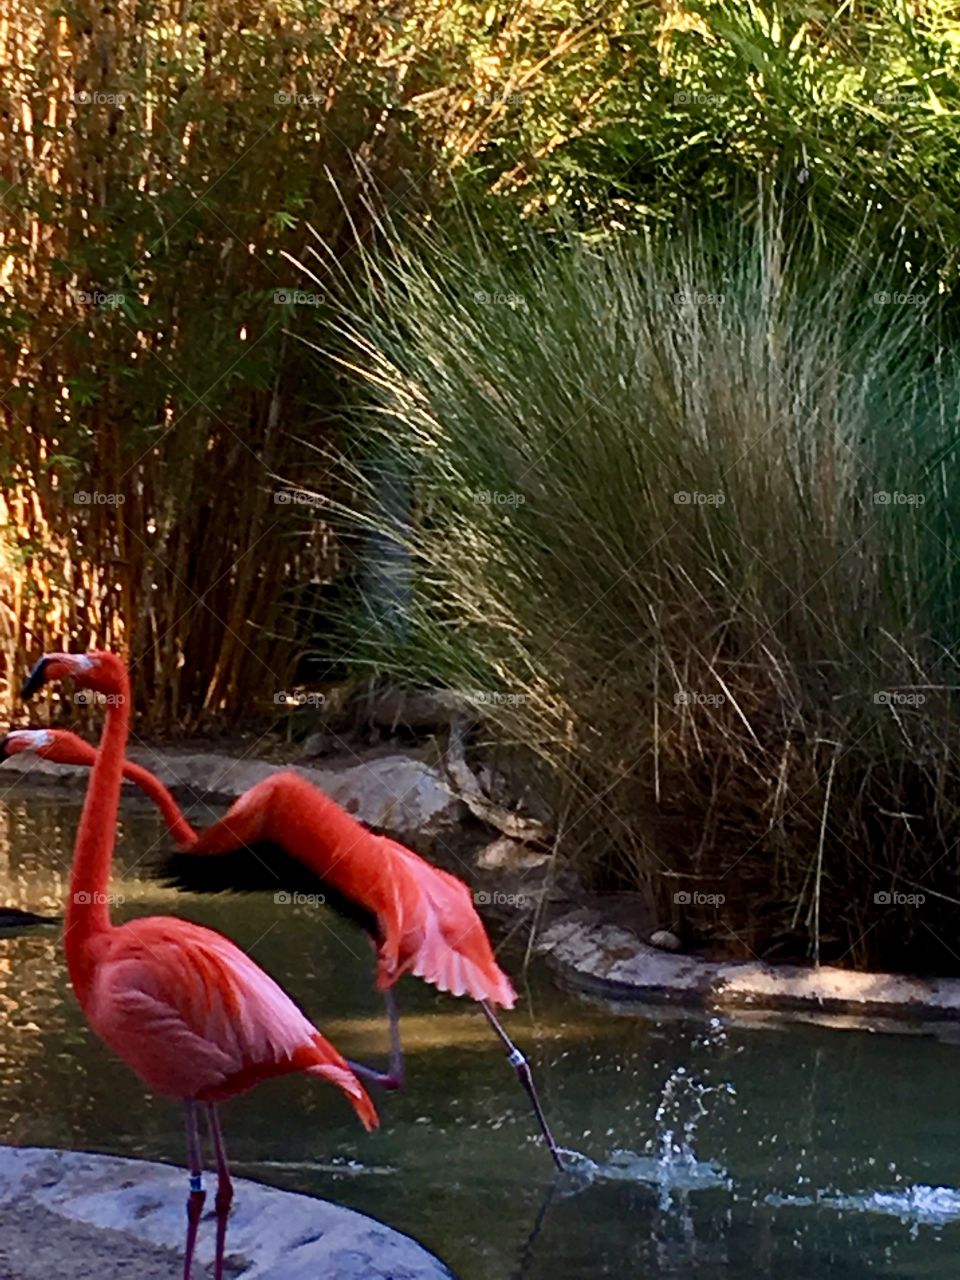 Flamingo caught mid flight. 